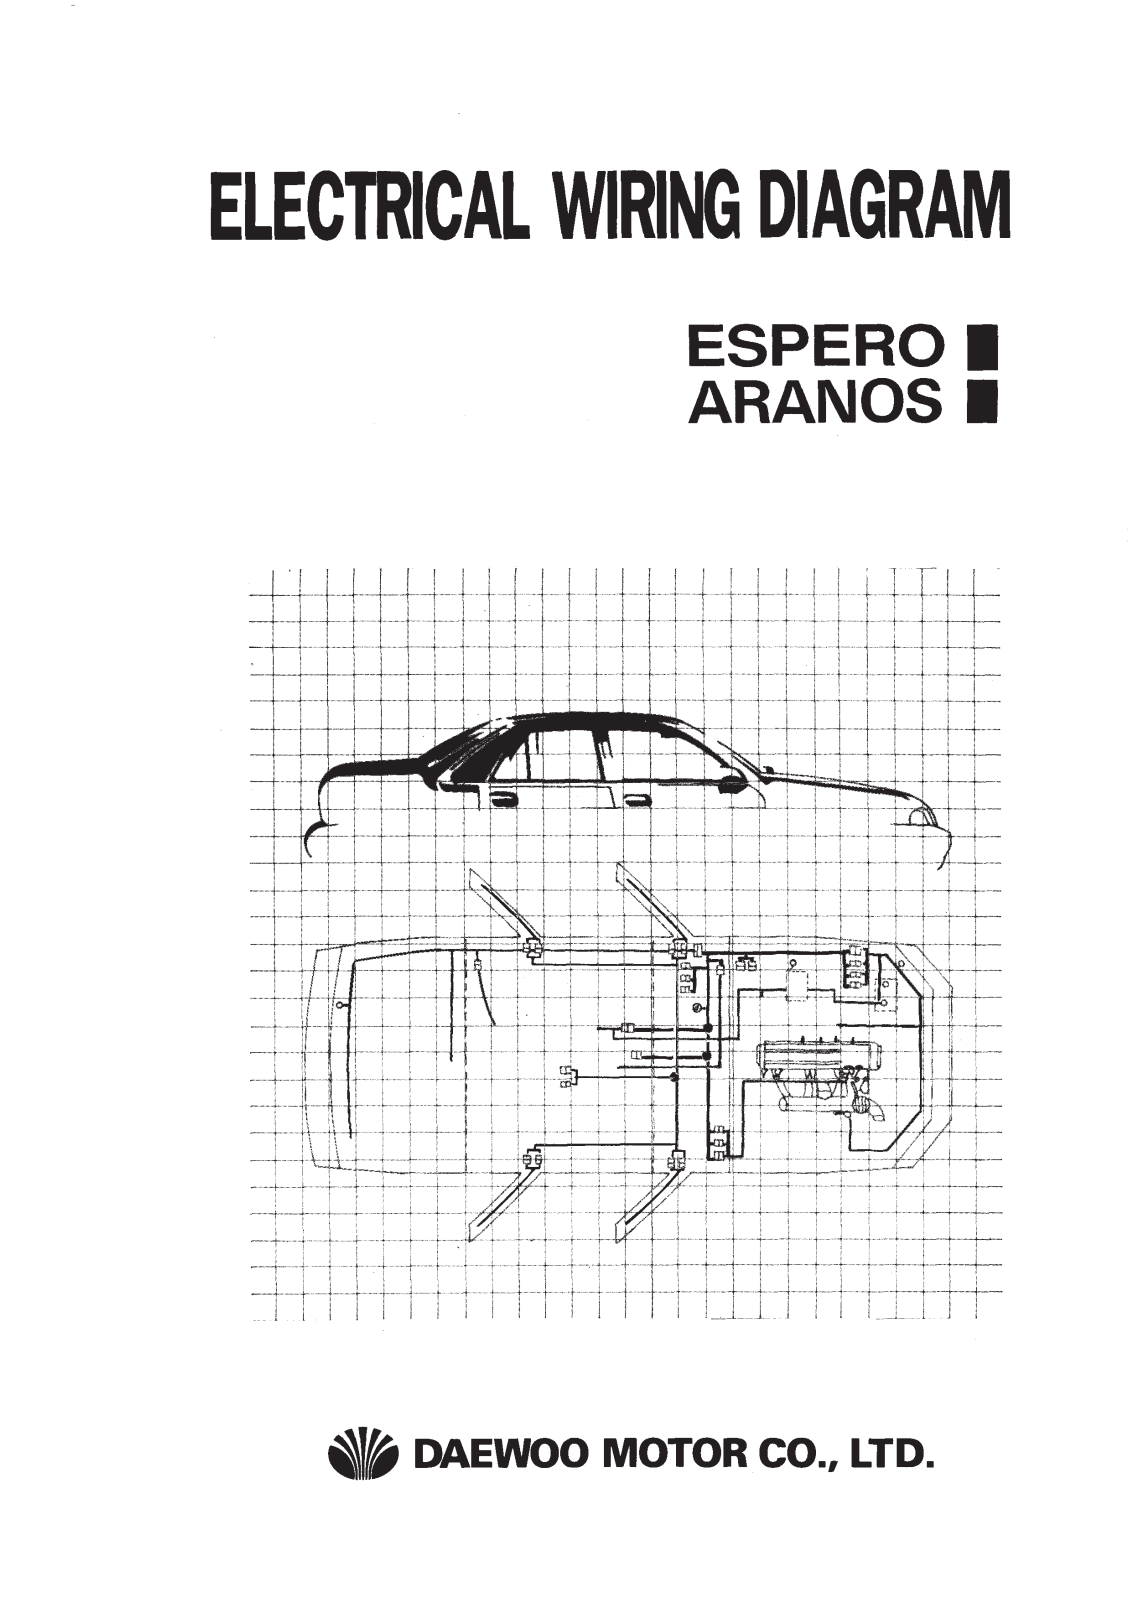 DAEWOO Aranos electrical wiring diagram